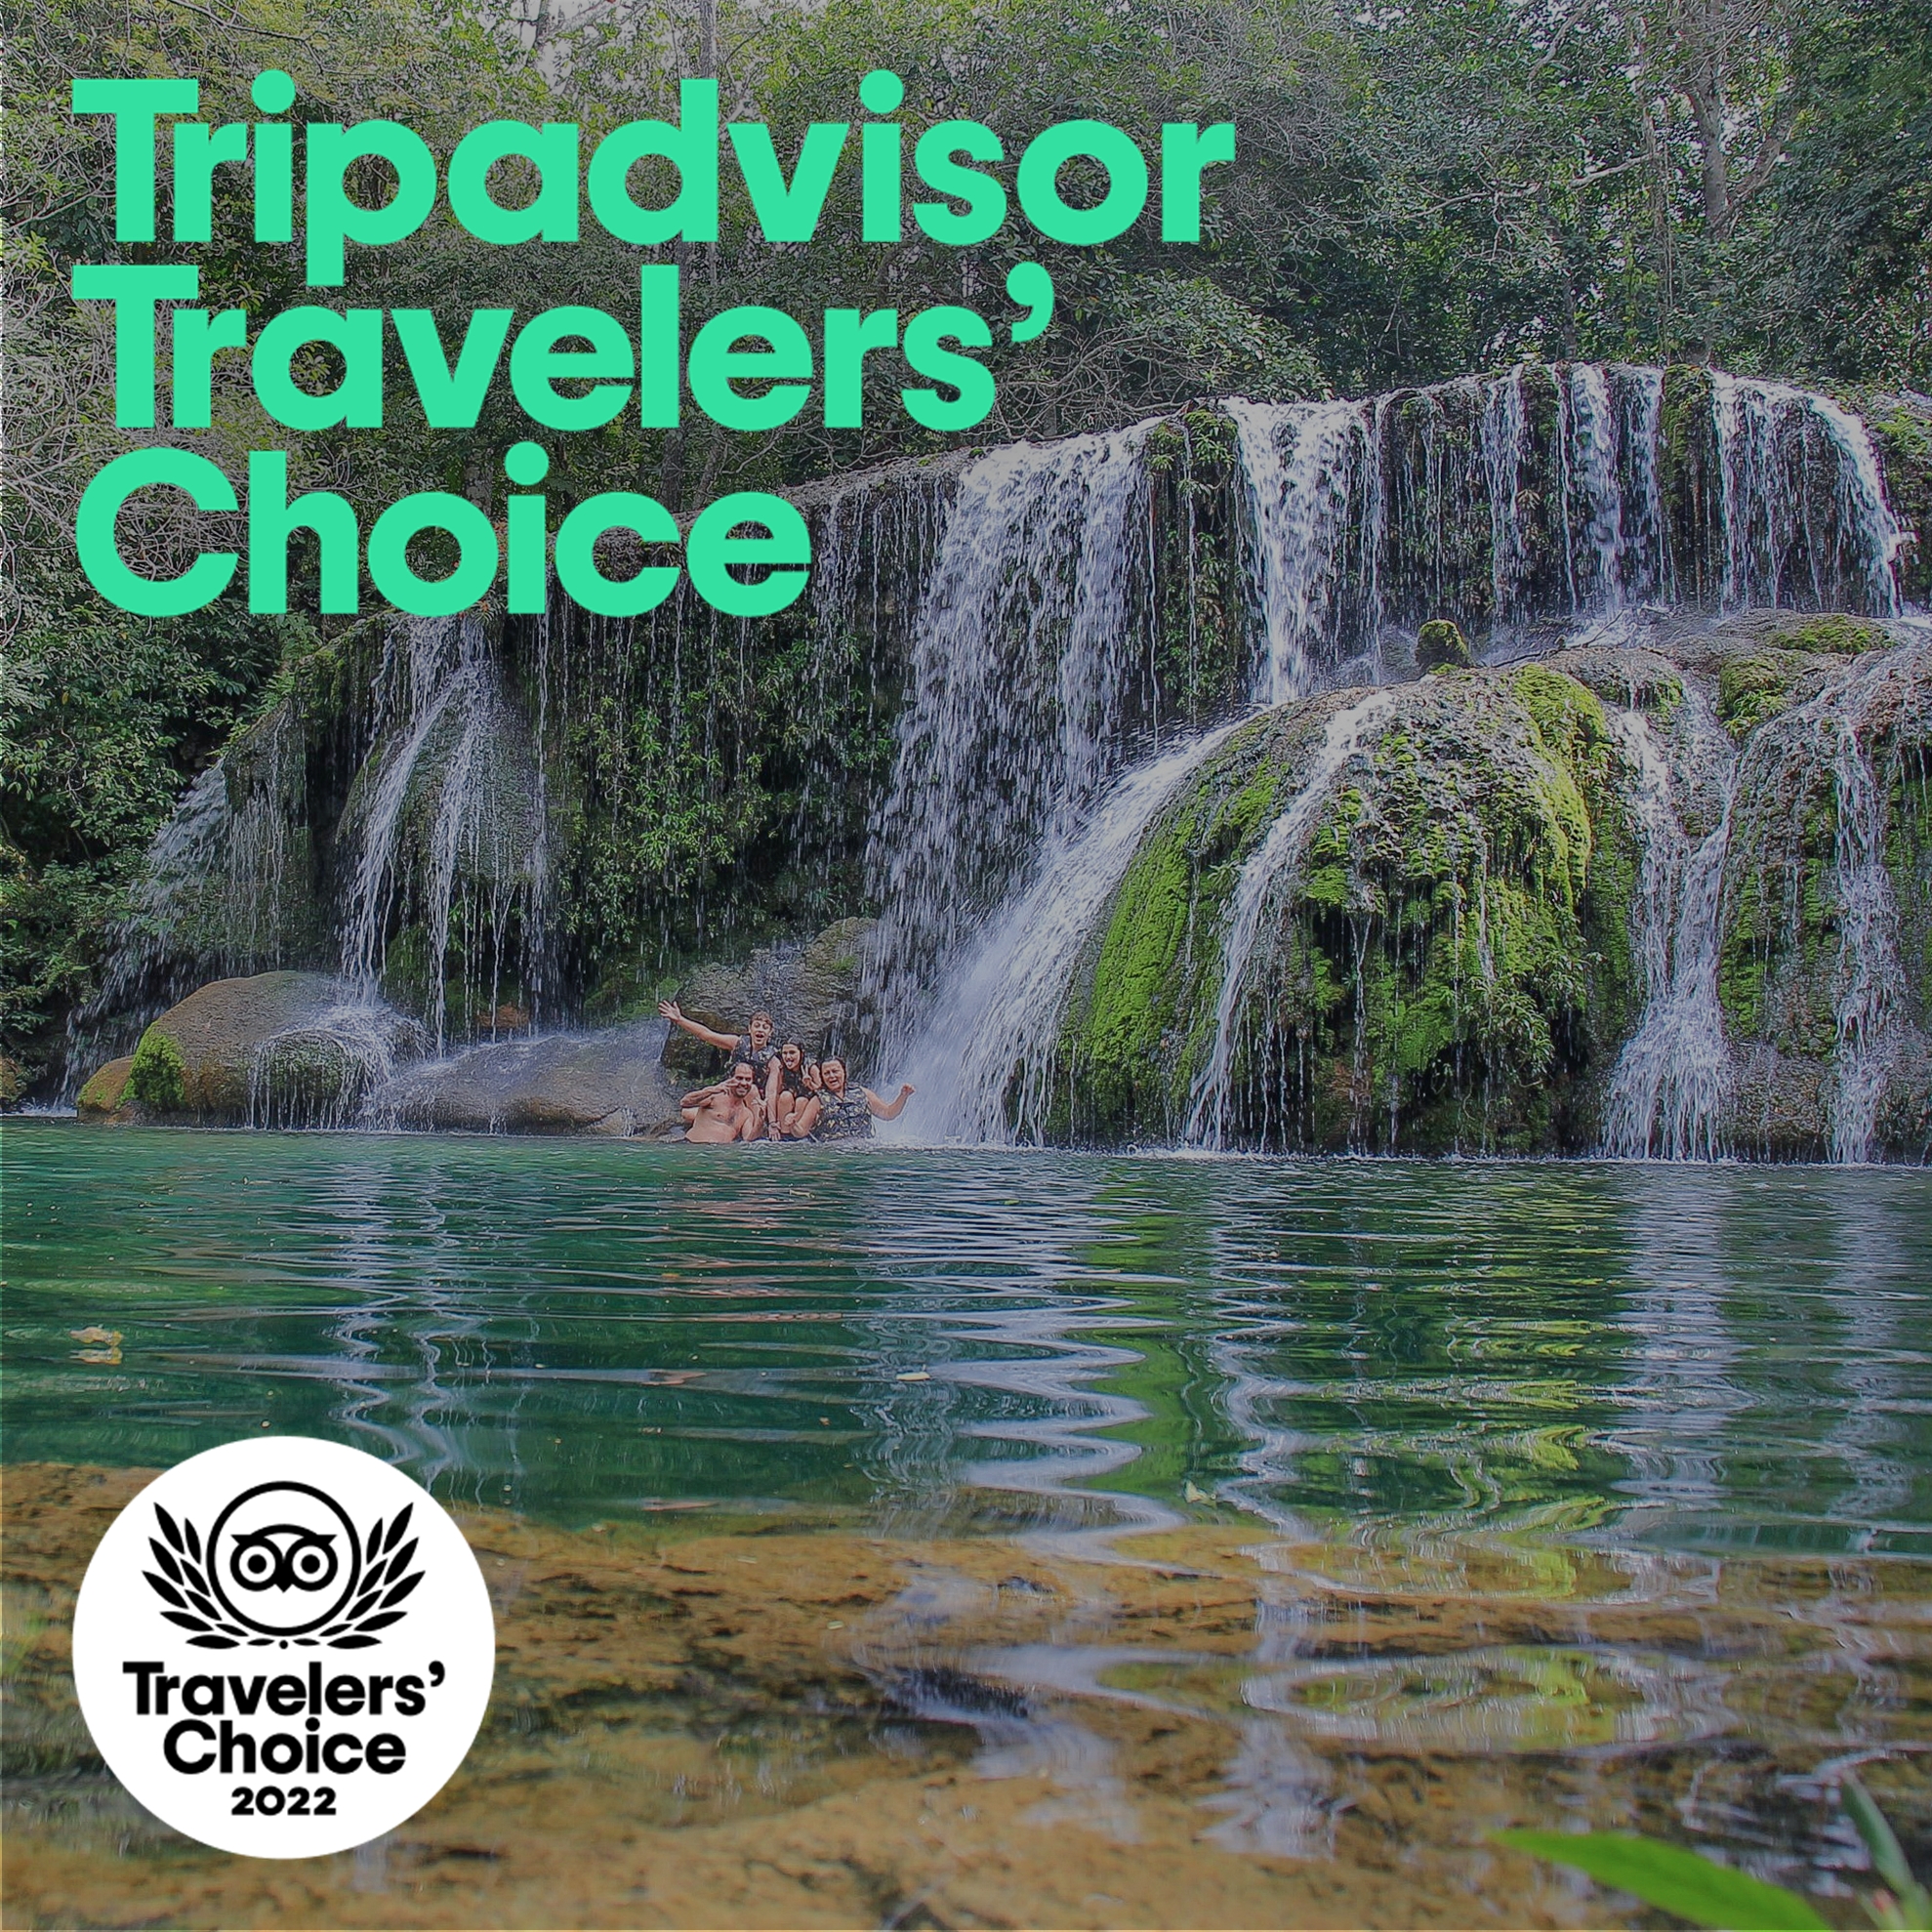 Estância Mimosa conquista Prêmio Travelers’ Choice 2022 do TripAdvisor